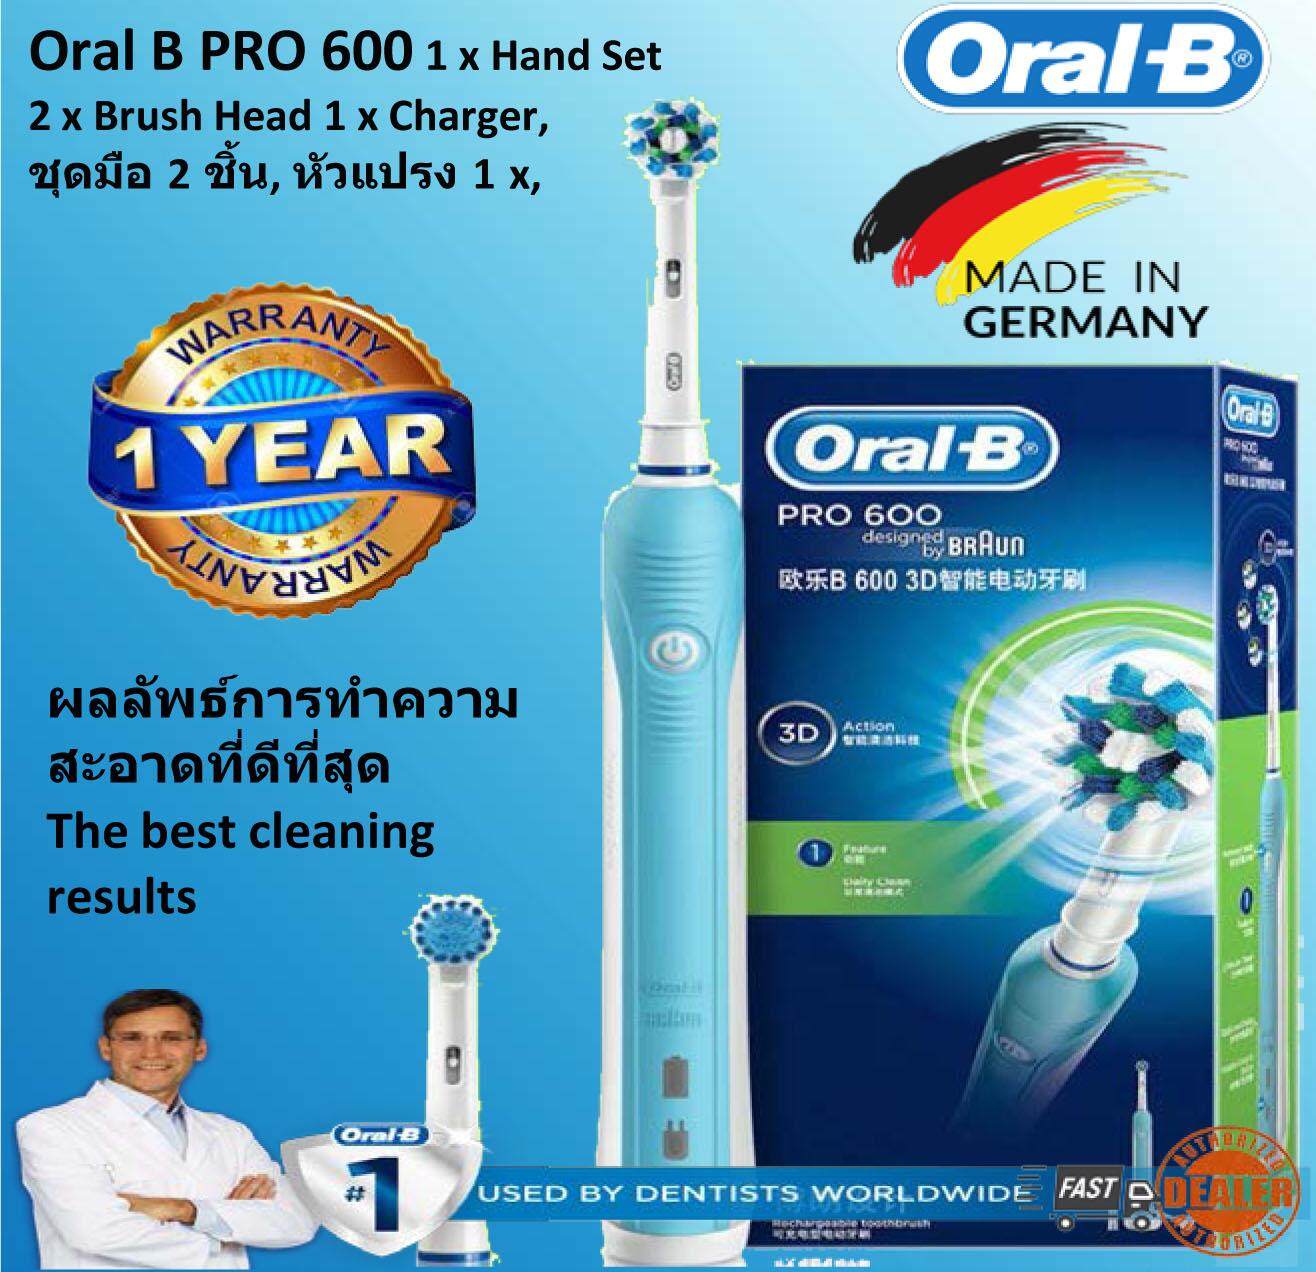 แปรงสีฟันไฟฟ้า รอยยิ้มขาวสดใสใน 1 สัปดาห์ นครสวรรค์ แปรงสีฟันไฟฟ้า Oral B รุ่น Pro 600 Sensi Ultrathin Electric Rechargeable Toothbrush Powered by Braun   2 x Brushes 